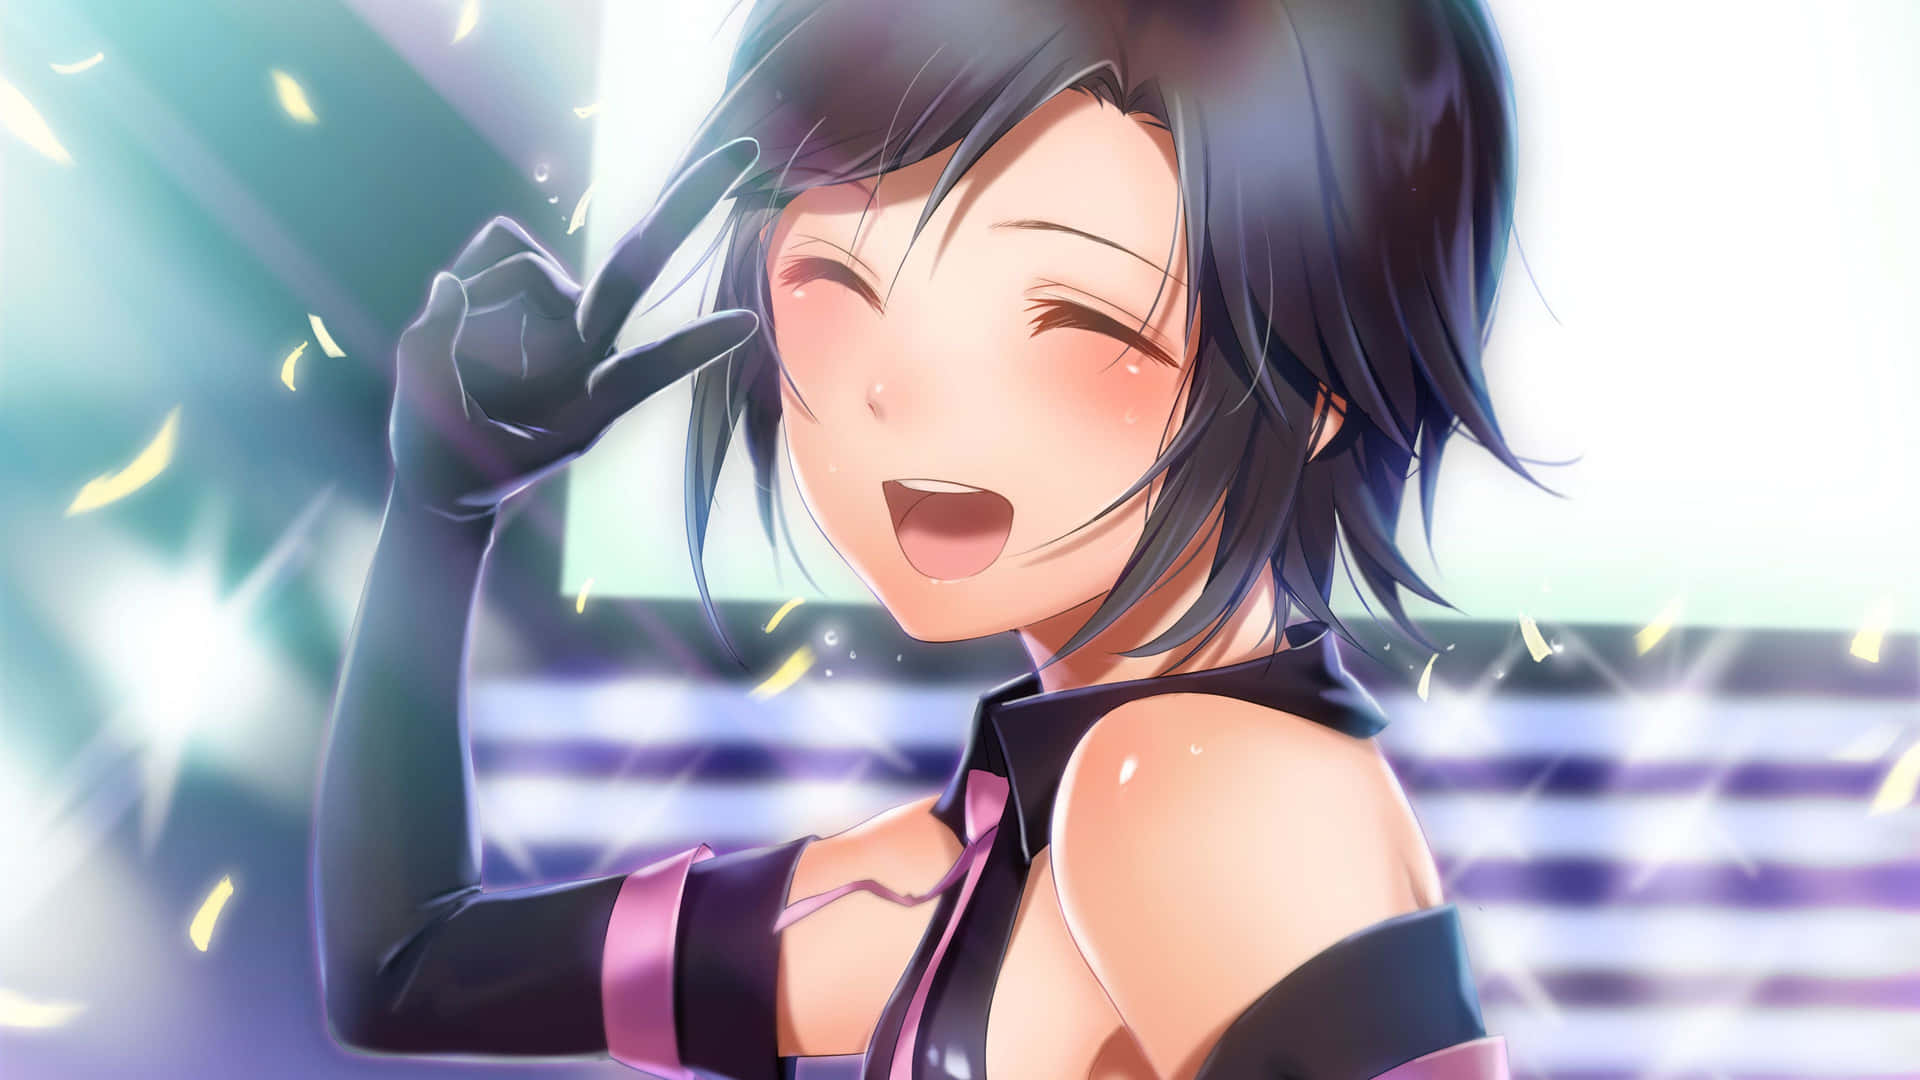 Joyful Anime Girl Sparkling Background Wallpaper